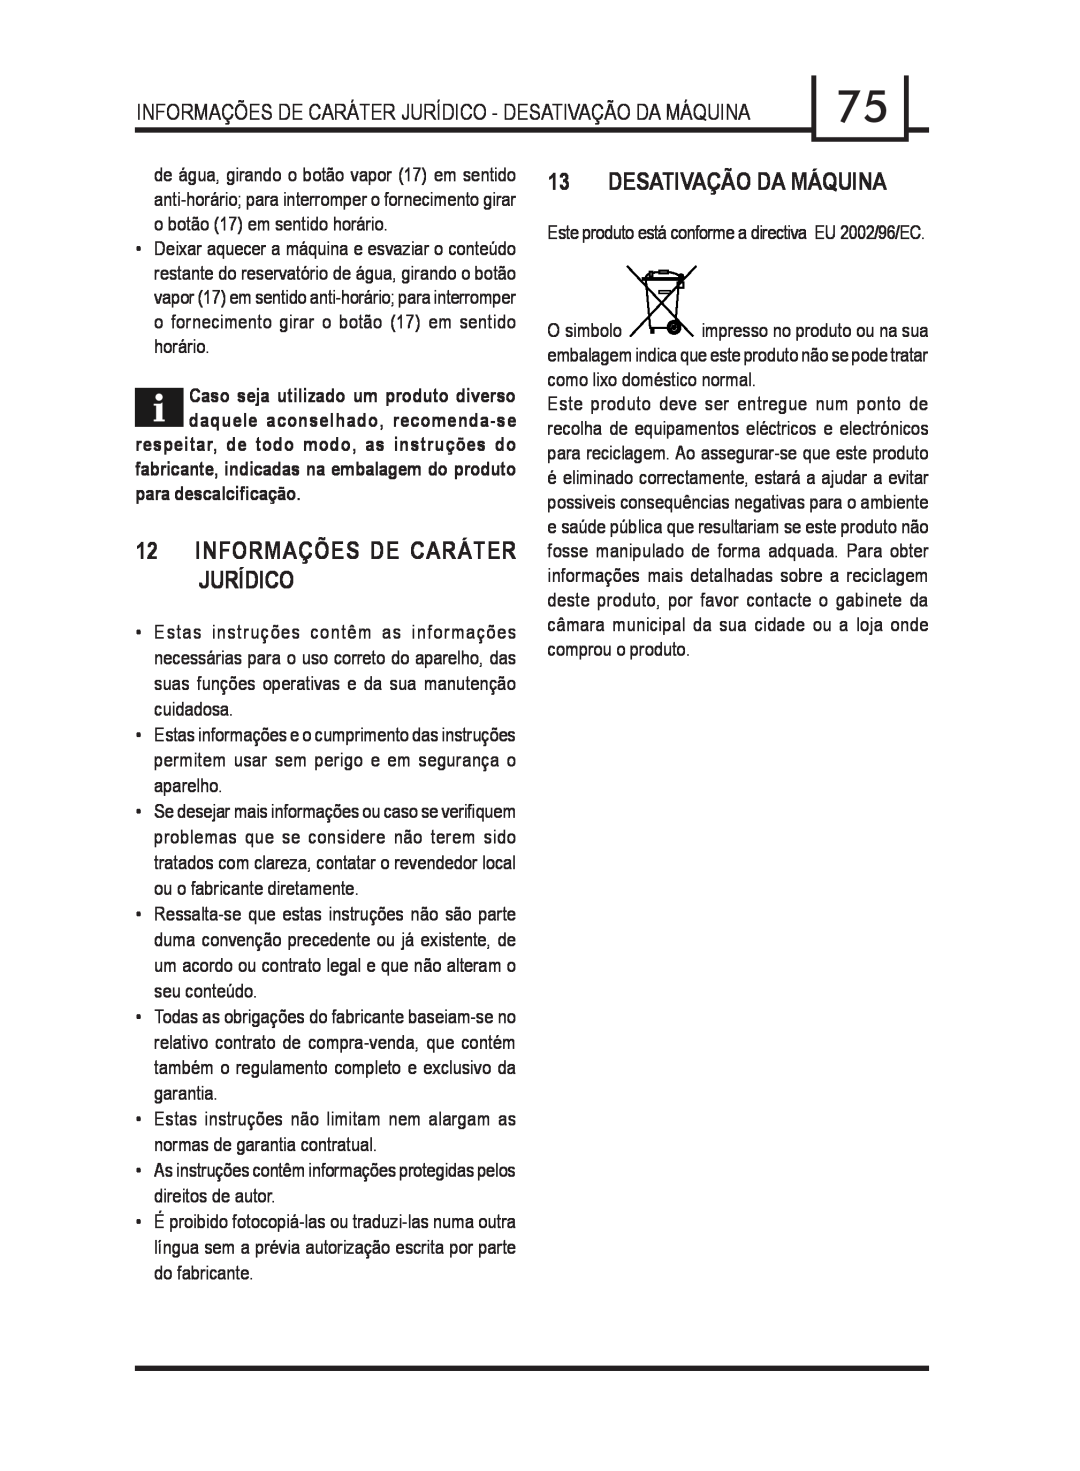 Gaggia 740903008 manual 12INFORMAÇÕES DE CARÁTER JURÍDICO, Desativação Da Máquina, para descalciﬁcação 